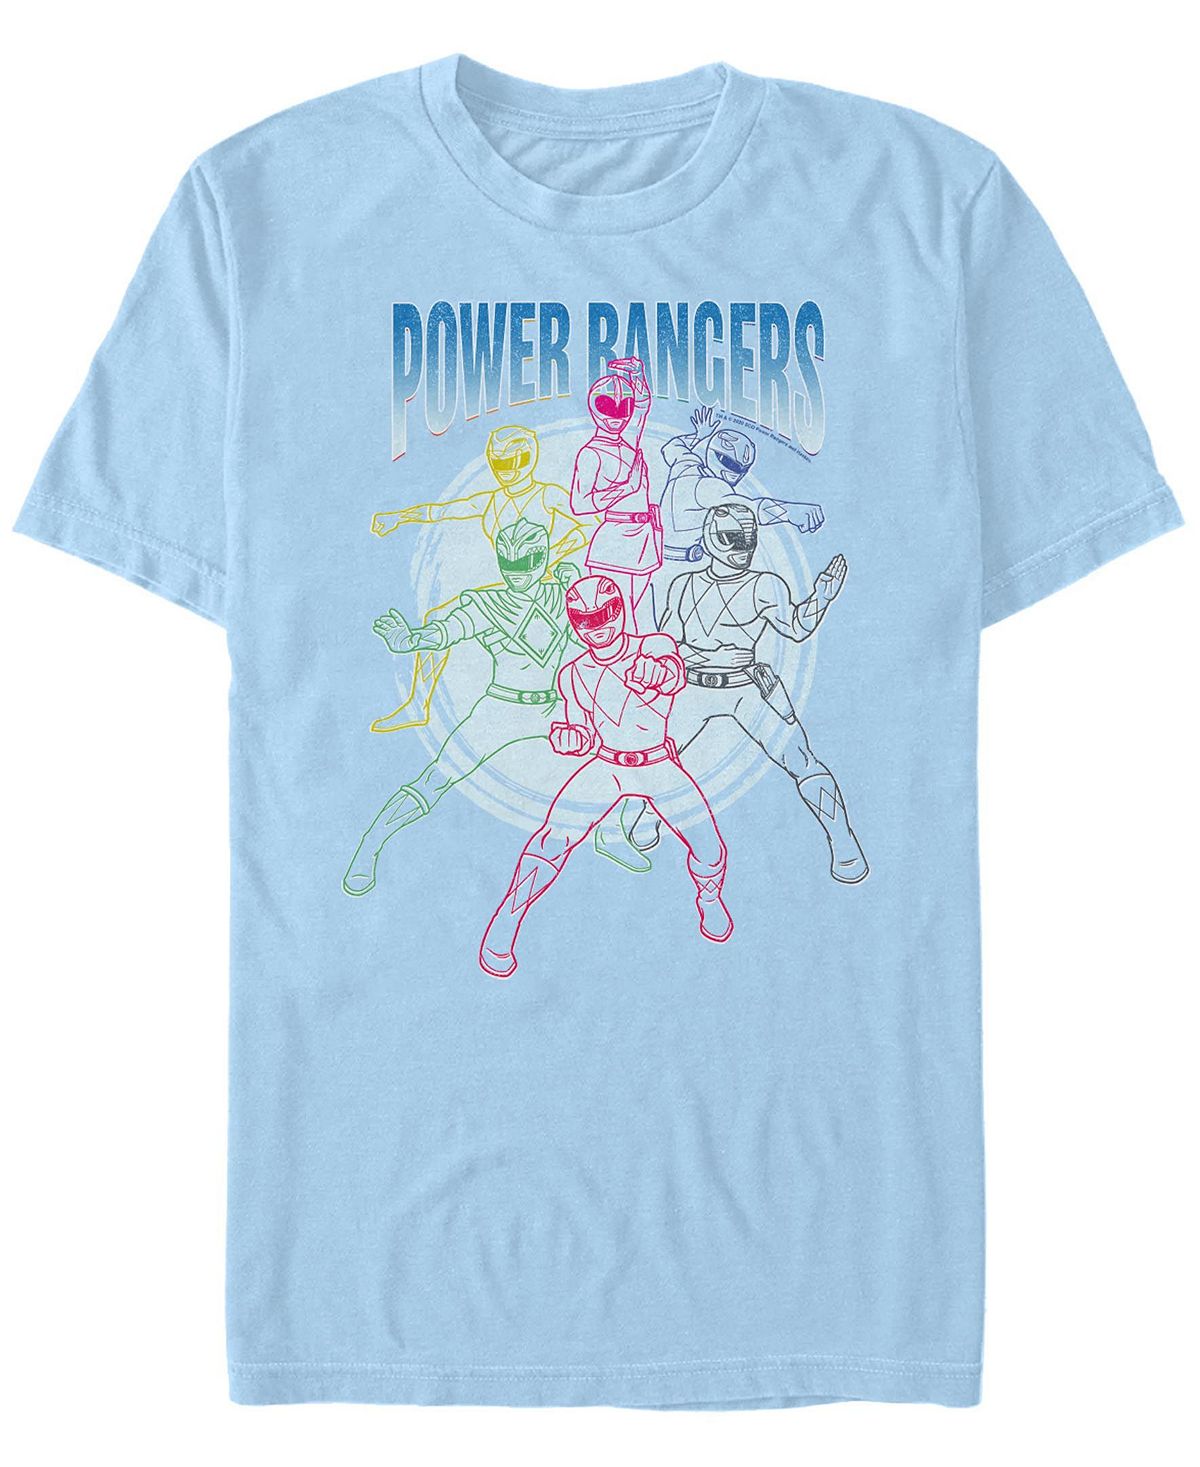 Мужская футболка Power Rangers Line Art с короткими рукавами и круглым вырезом Fifth Sun